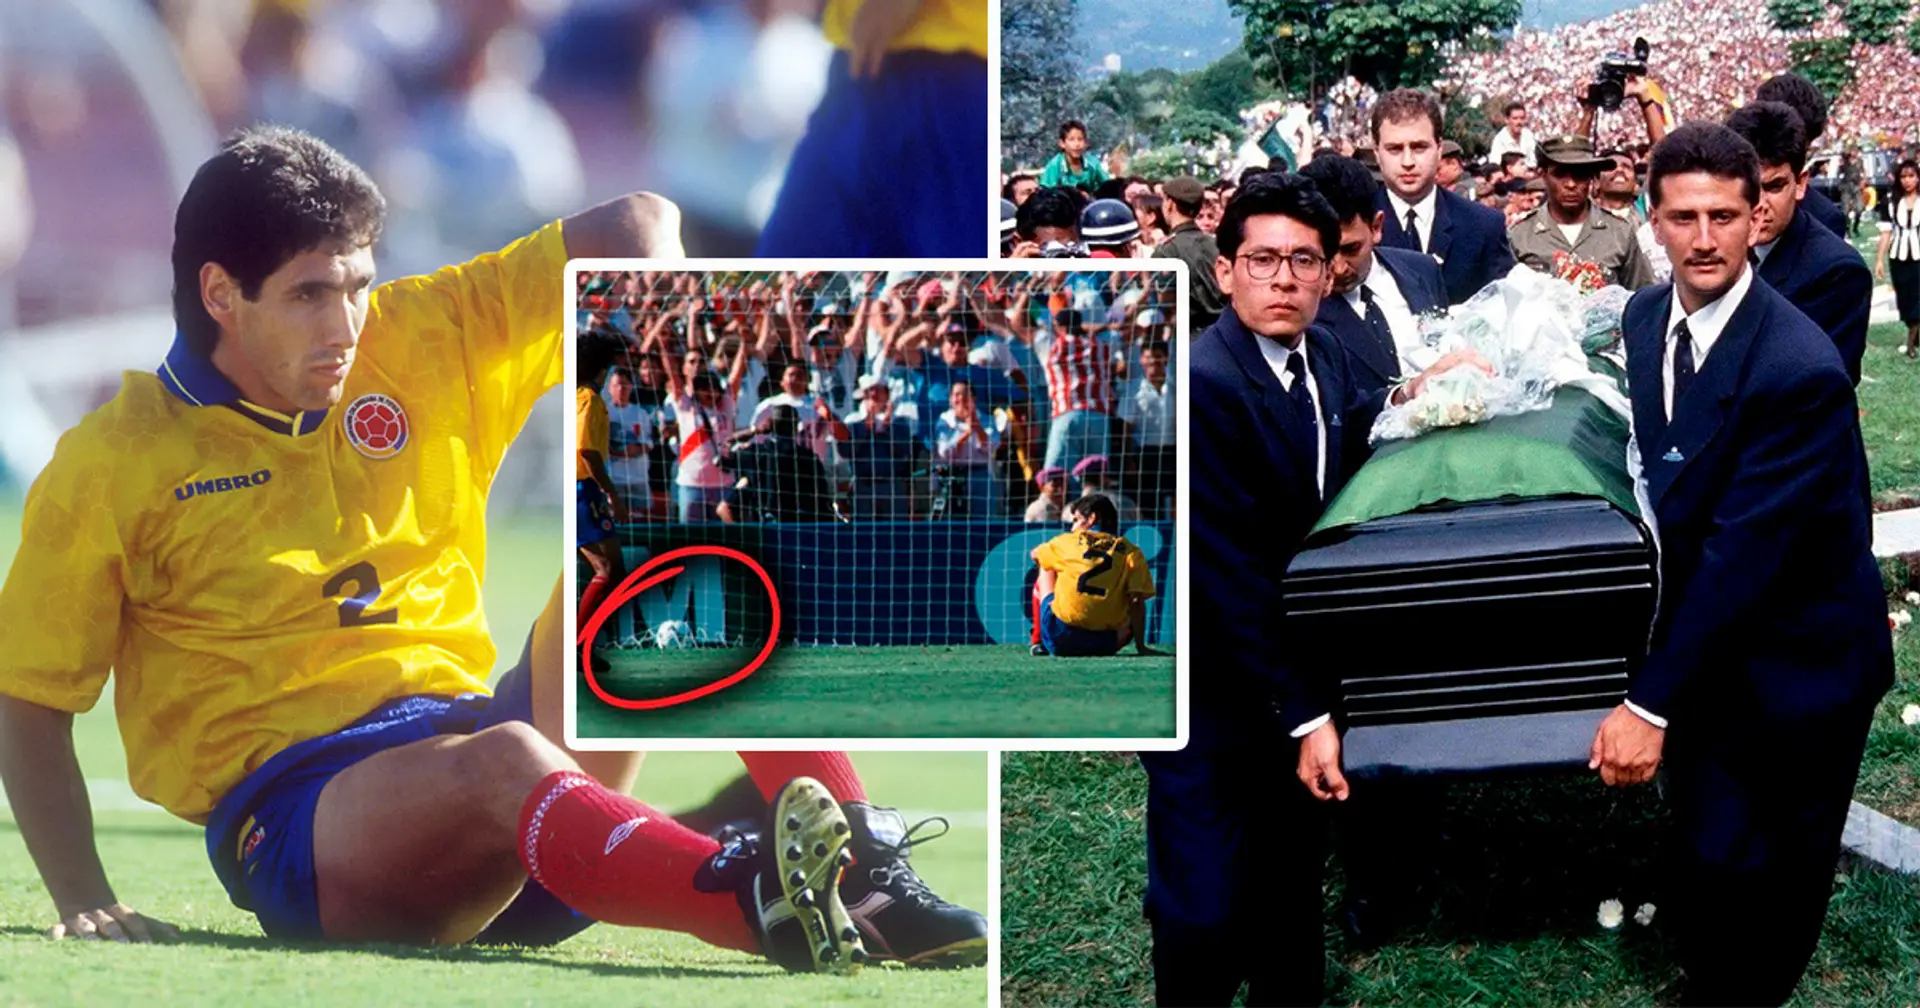 Comment la star colombienne Andres Escobar a été tuée par un cartel de la drogue après un but contre son camp malchanceux lors de la Coupe du monde 1994